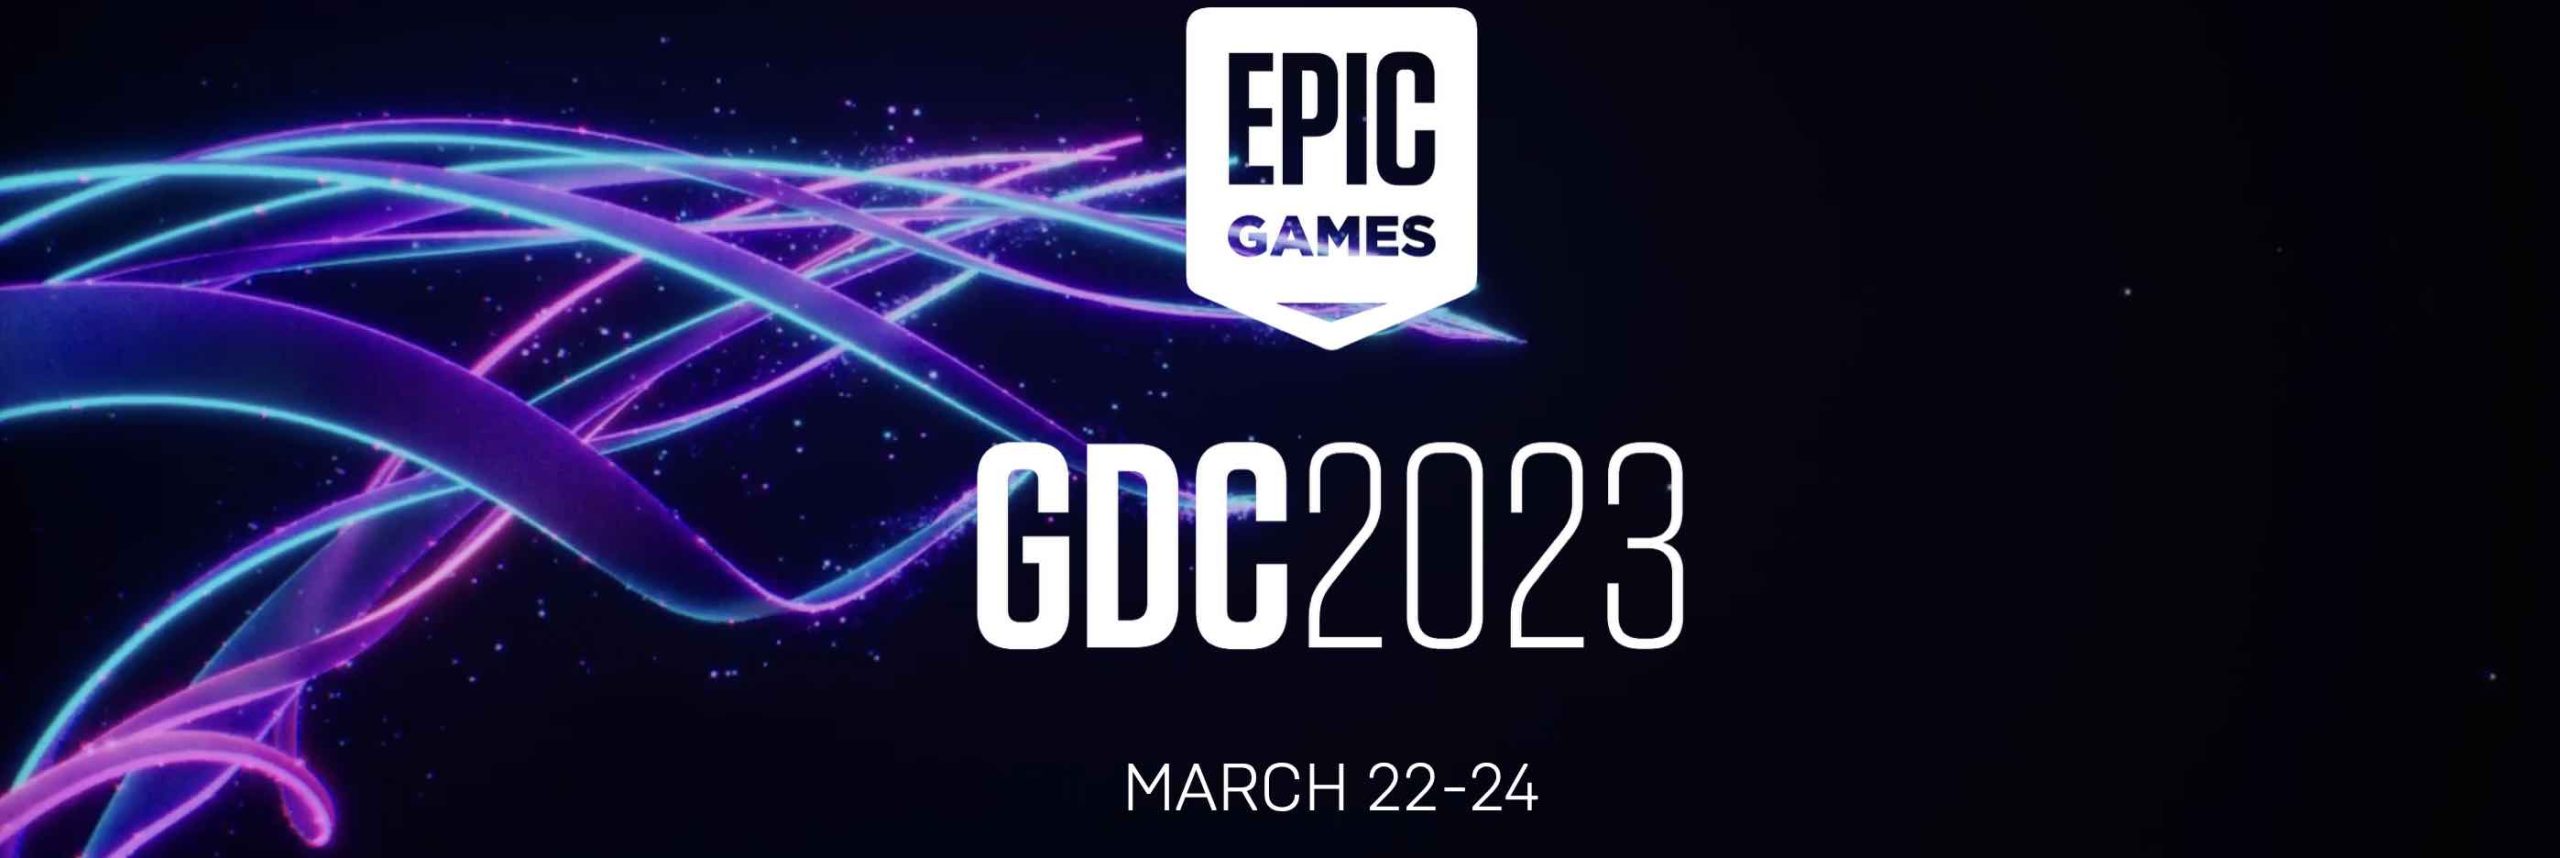 Epic Games na GDC 2023 com Unreal Engine 5